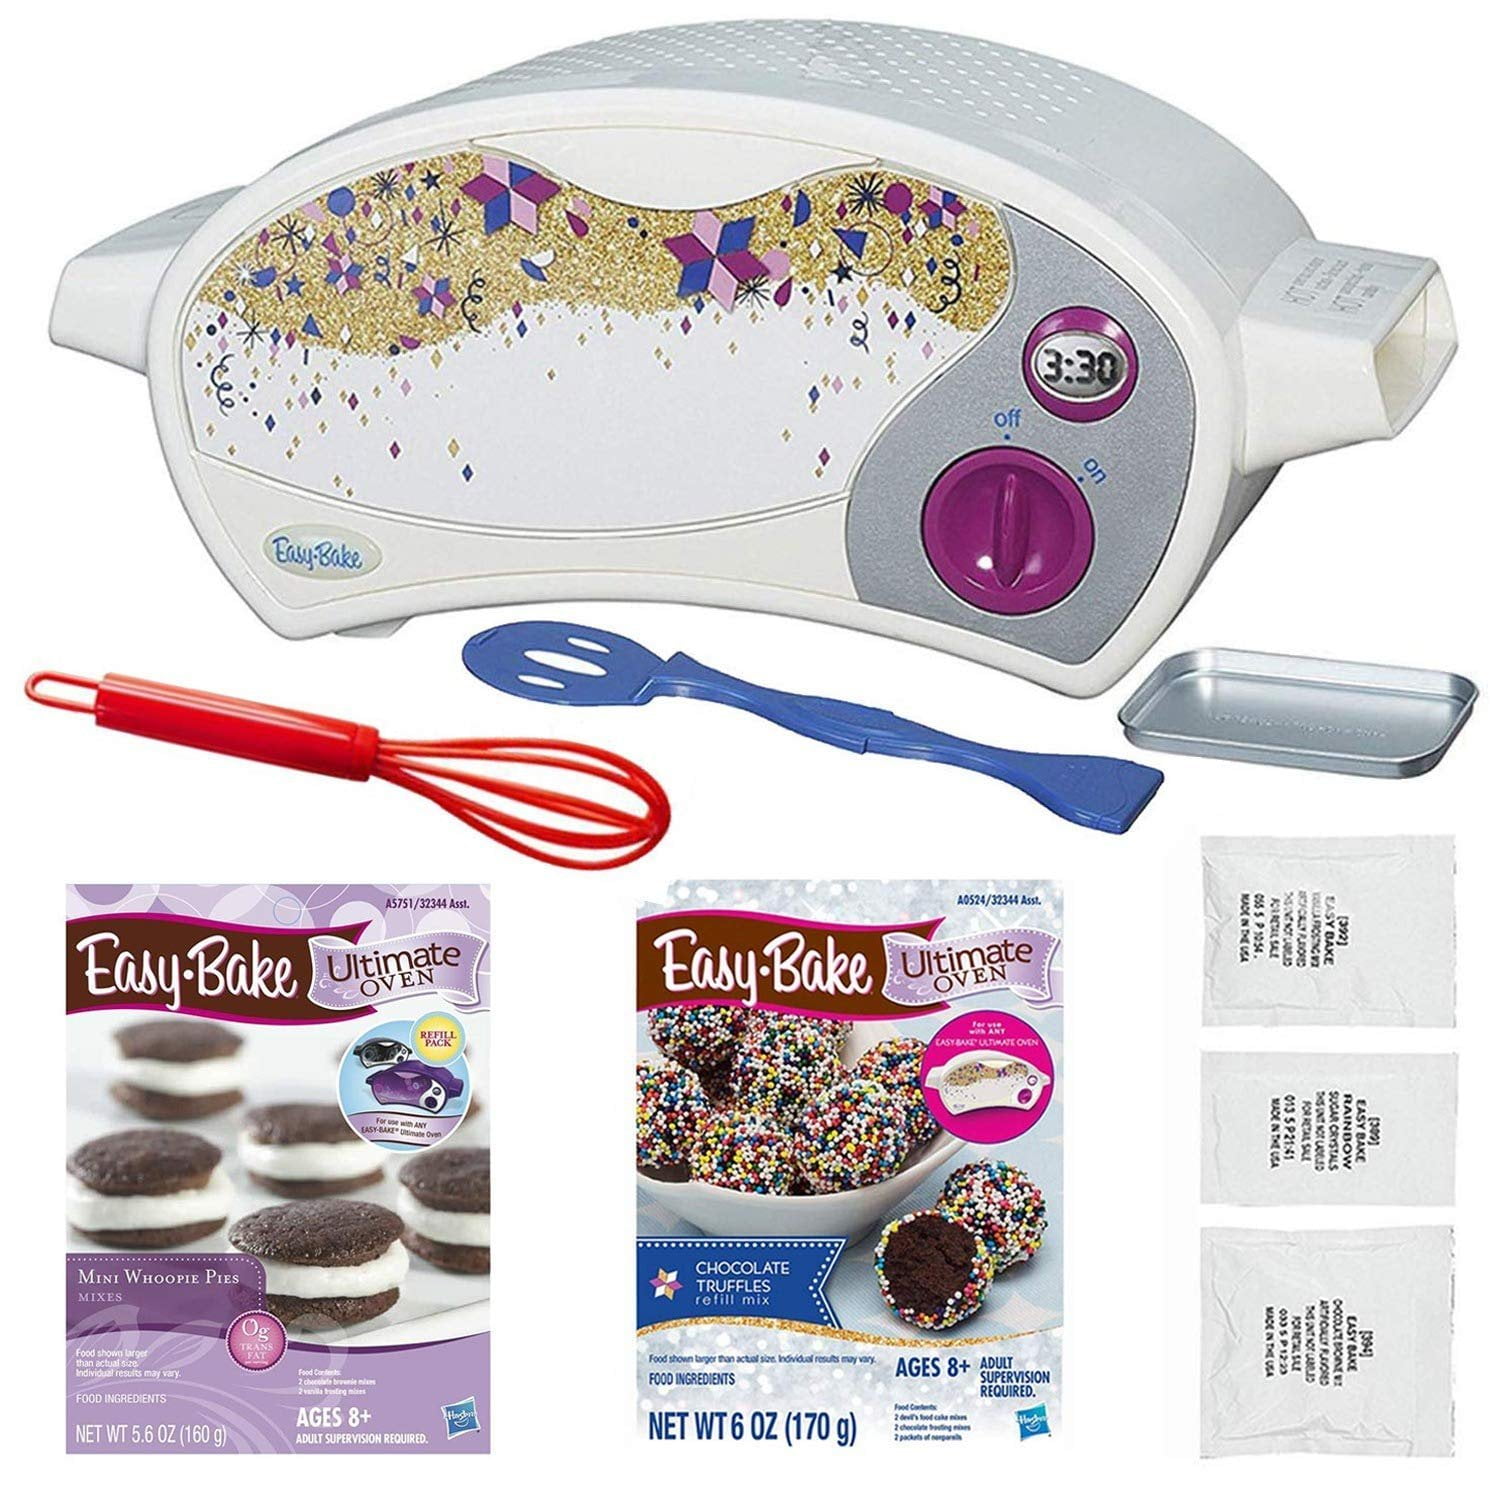 Easy-Bake Ultimate Oven Red Velvet Cupcakes Refill Pack 1 Pack 